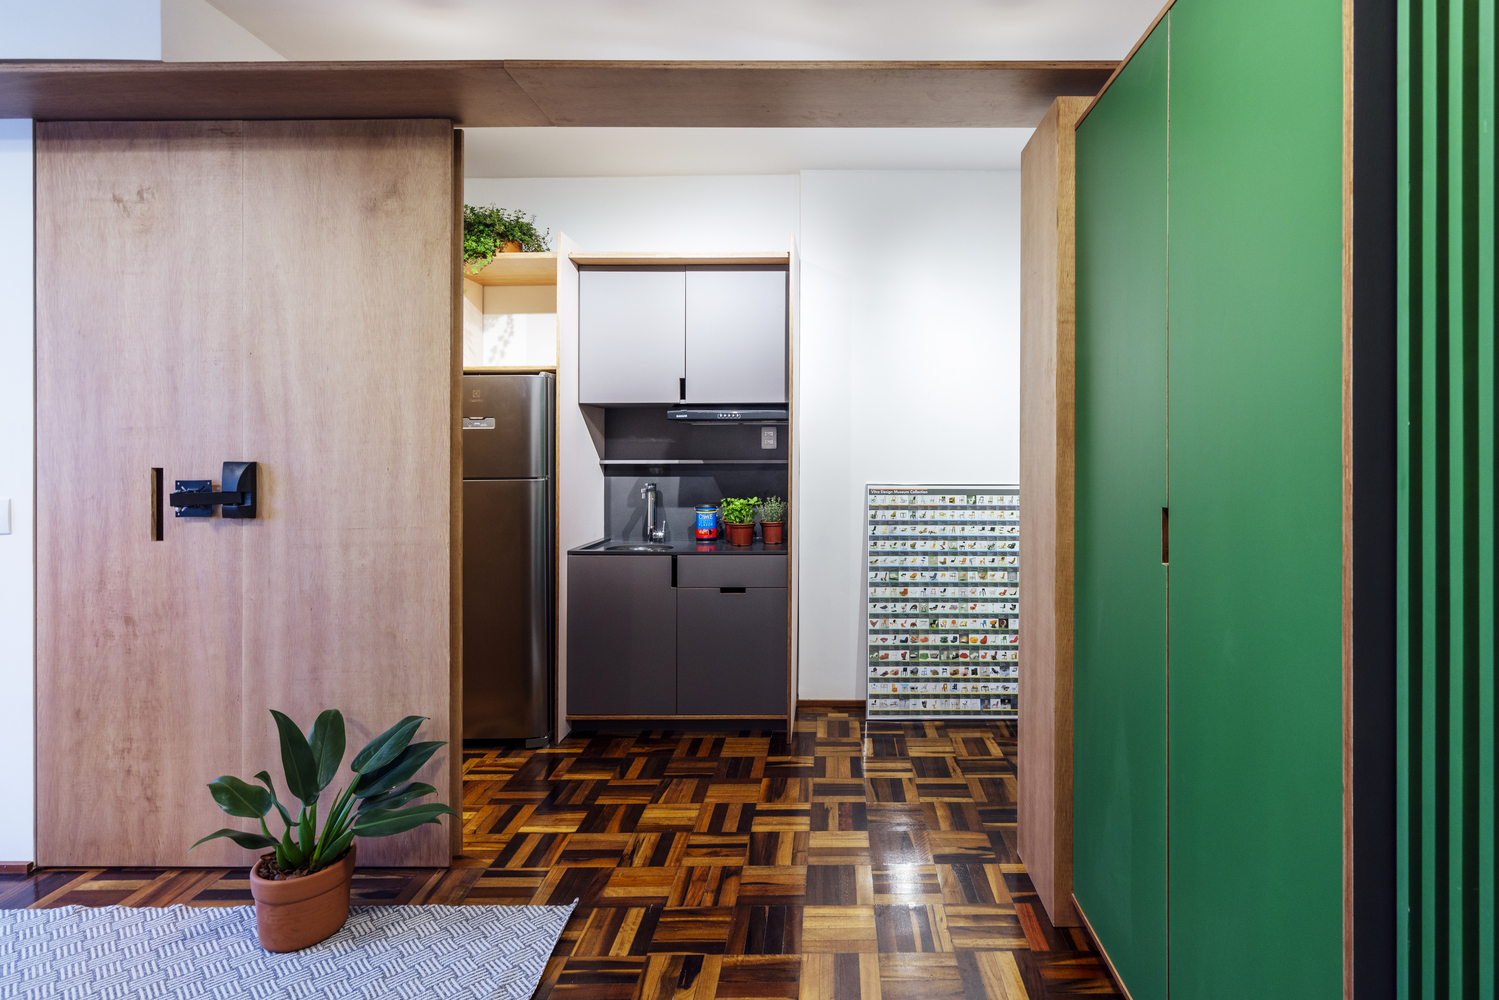 Sàn gỗ tối tối màu làm phông nền cho nội thất màu sắc tươi sáng thêm phần nổi bật, đồng thời giúp gia tăng chiều sâu cho căn hộ nhỏ.